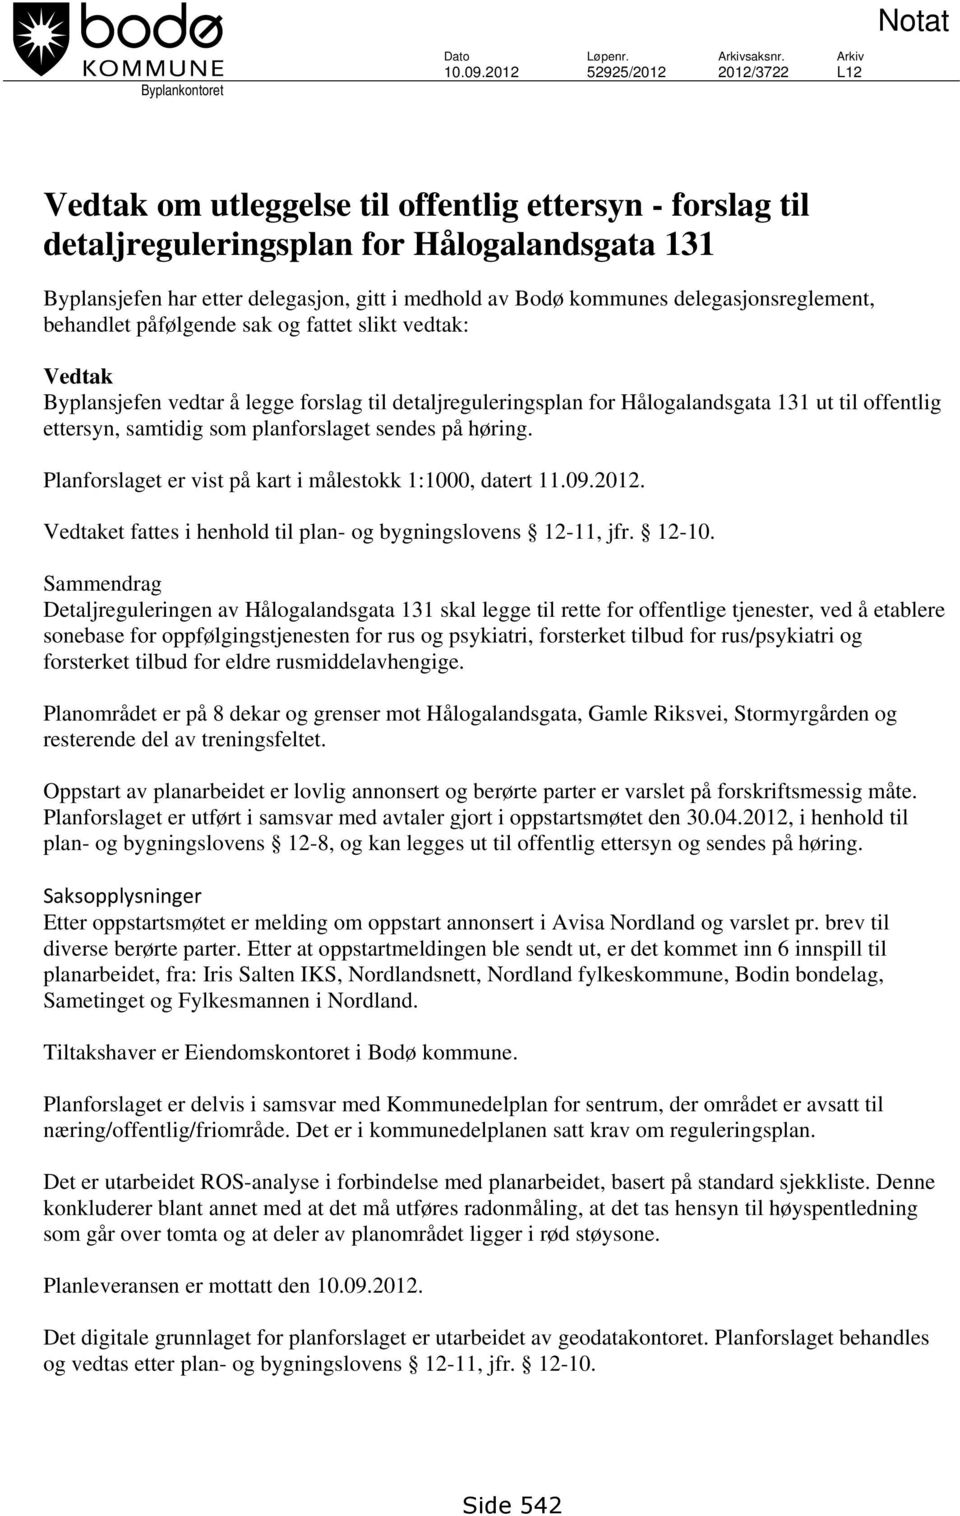 kommunes delegasjonsreglement, behandlet påfølgende sak og fattet slikt vedtak: Vedtak Byplansjefen vedtar å legge forslag til detaljreguleringsplan for Hålogalandsgata 131 ut til offentlig ettersyn,